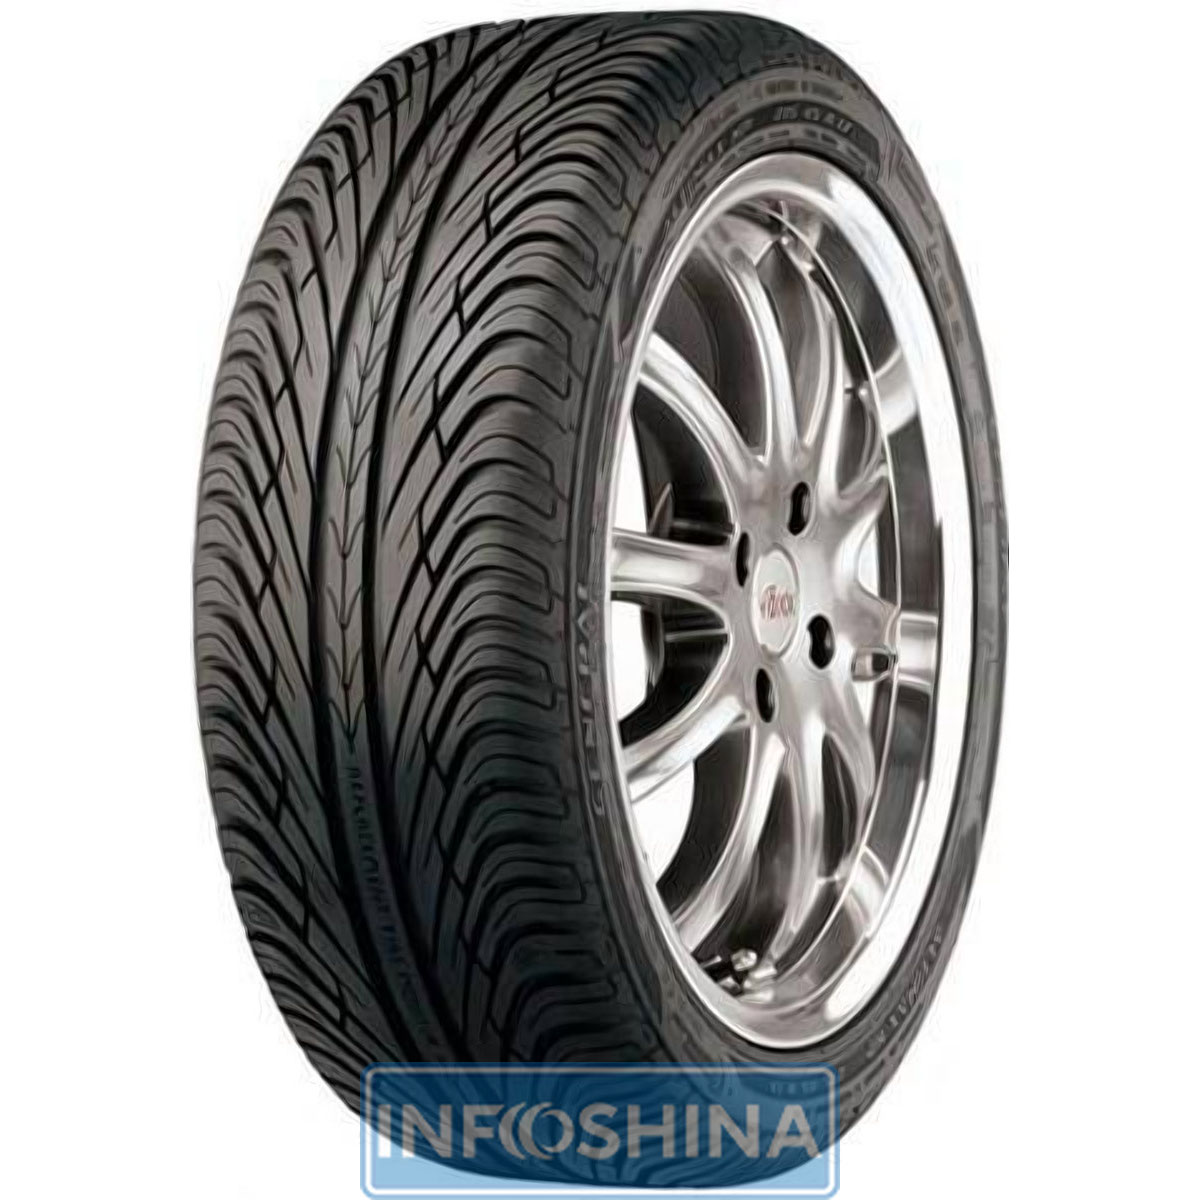 Купить шины General Tire Altimax HP 215/60 R16 95H